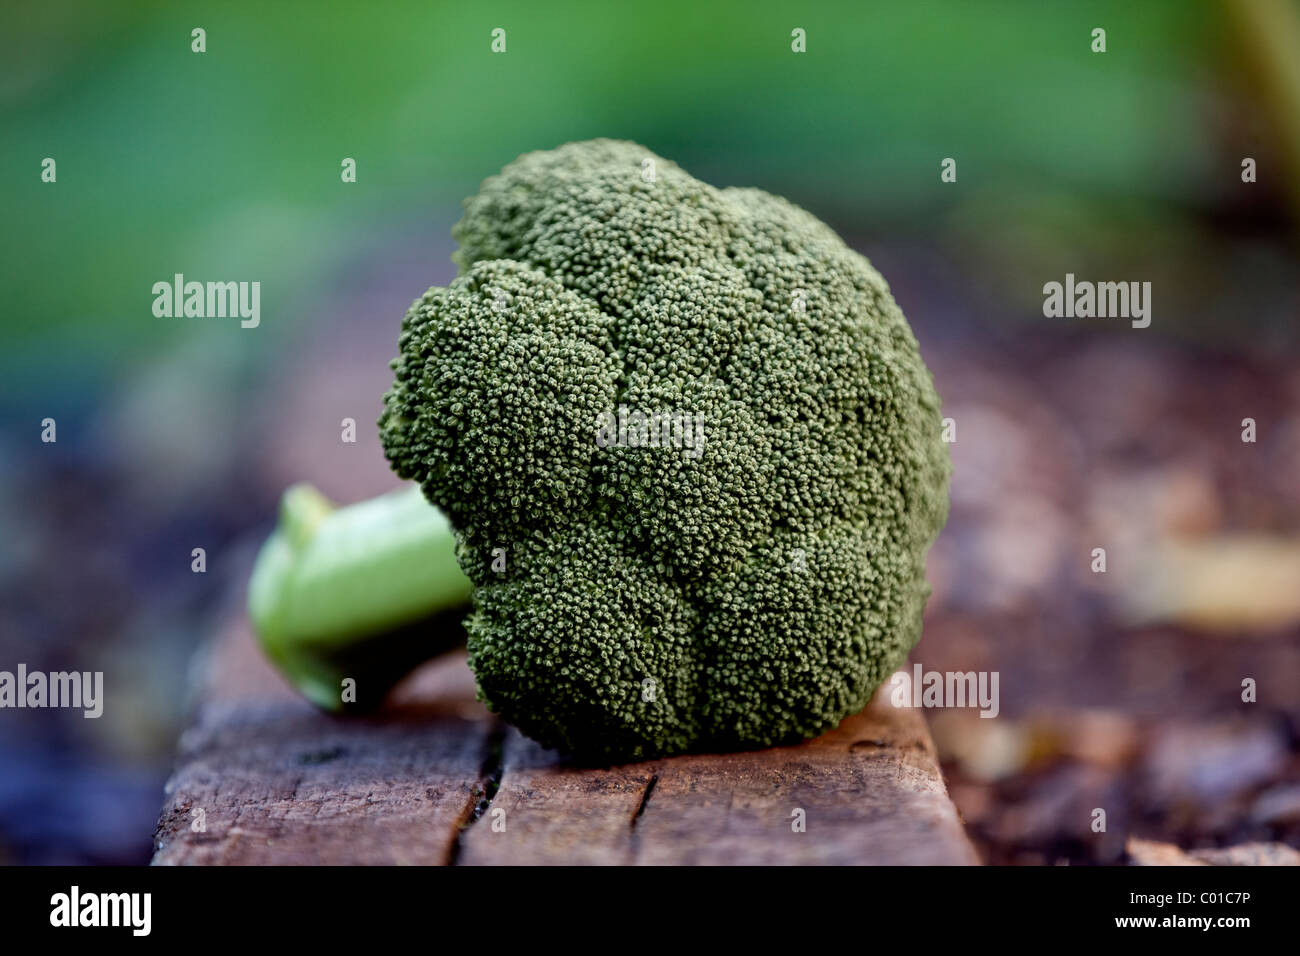 A head of broccoli in a garden Stock Photo